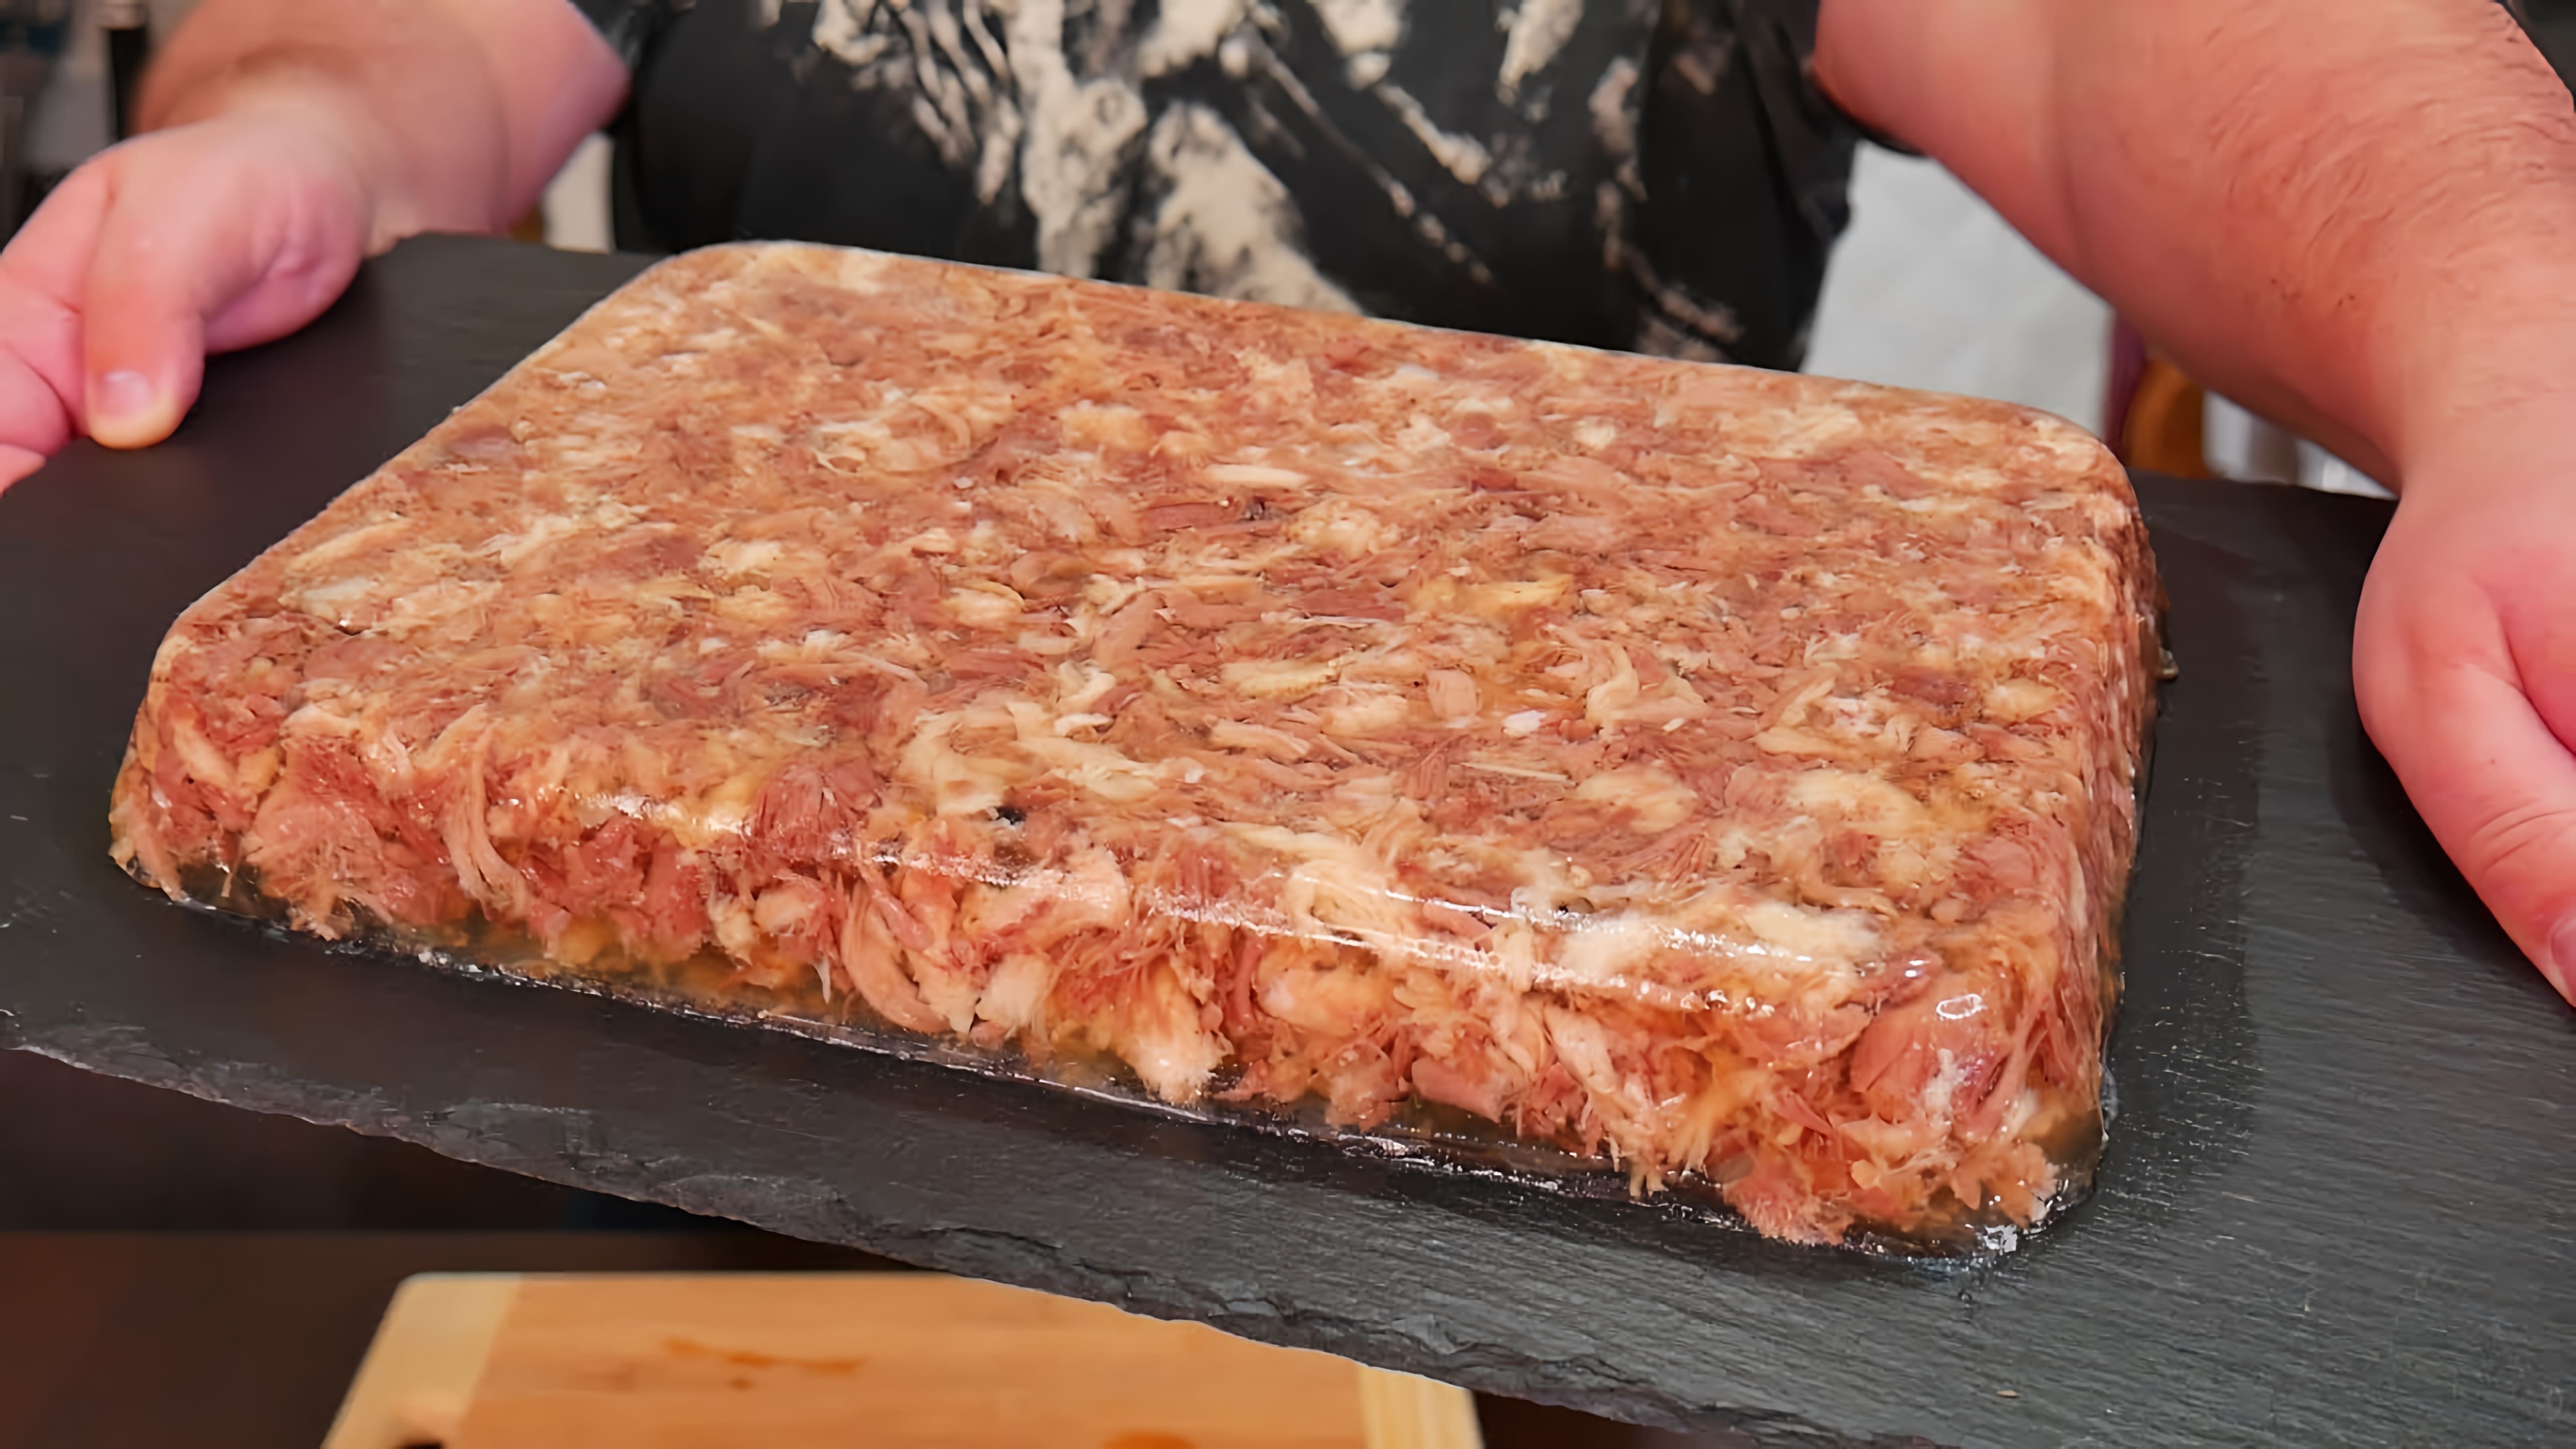 В данном видео демонстрируется процесс приготовления идеального холодца из трех видов мяса: свиной рульки, говядины и куриных бедер